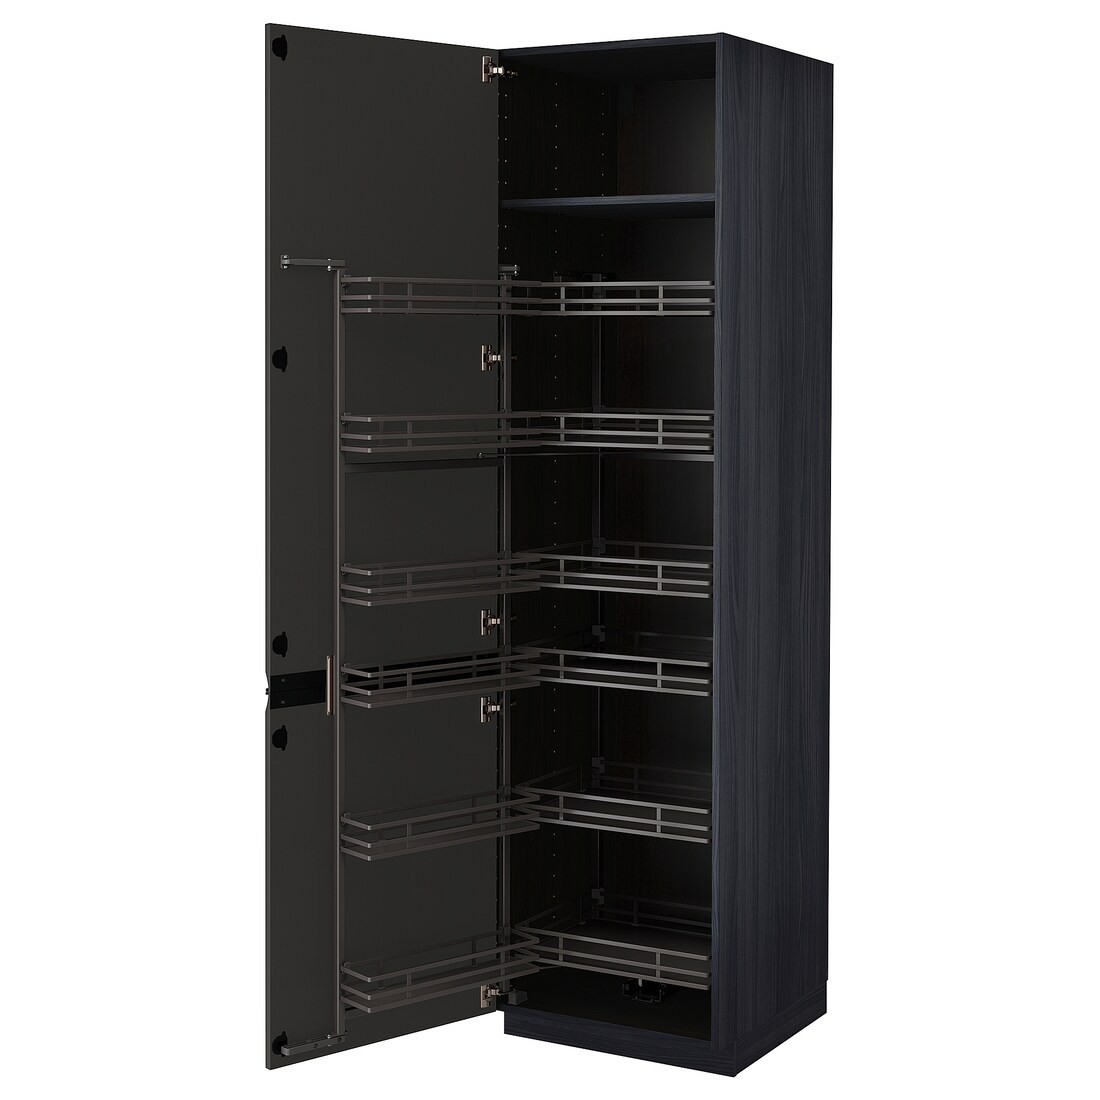 METOD МЕТОД Высокий шкаф с выдвижной кладовой, черный / Upplöv матовый антрацит, 60x60x220 см